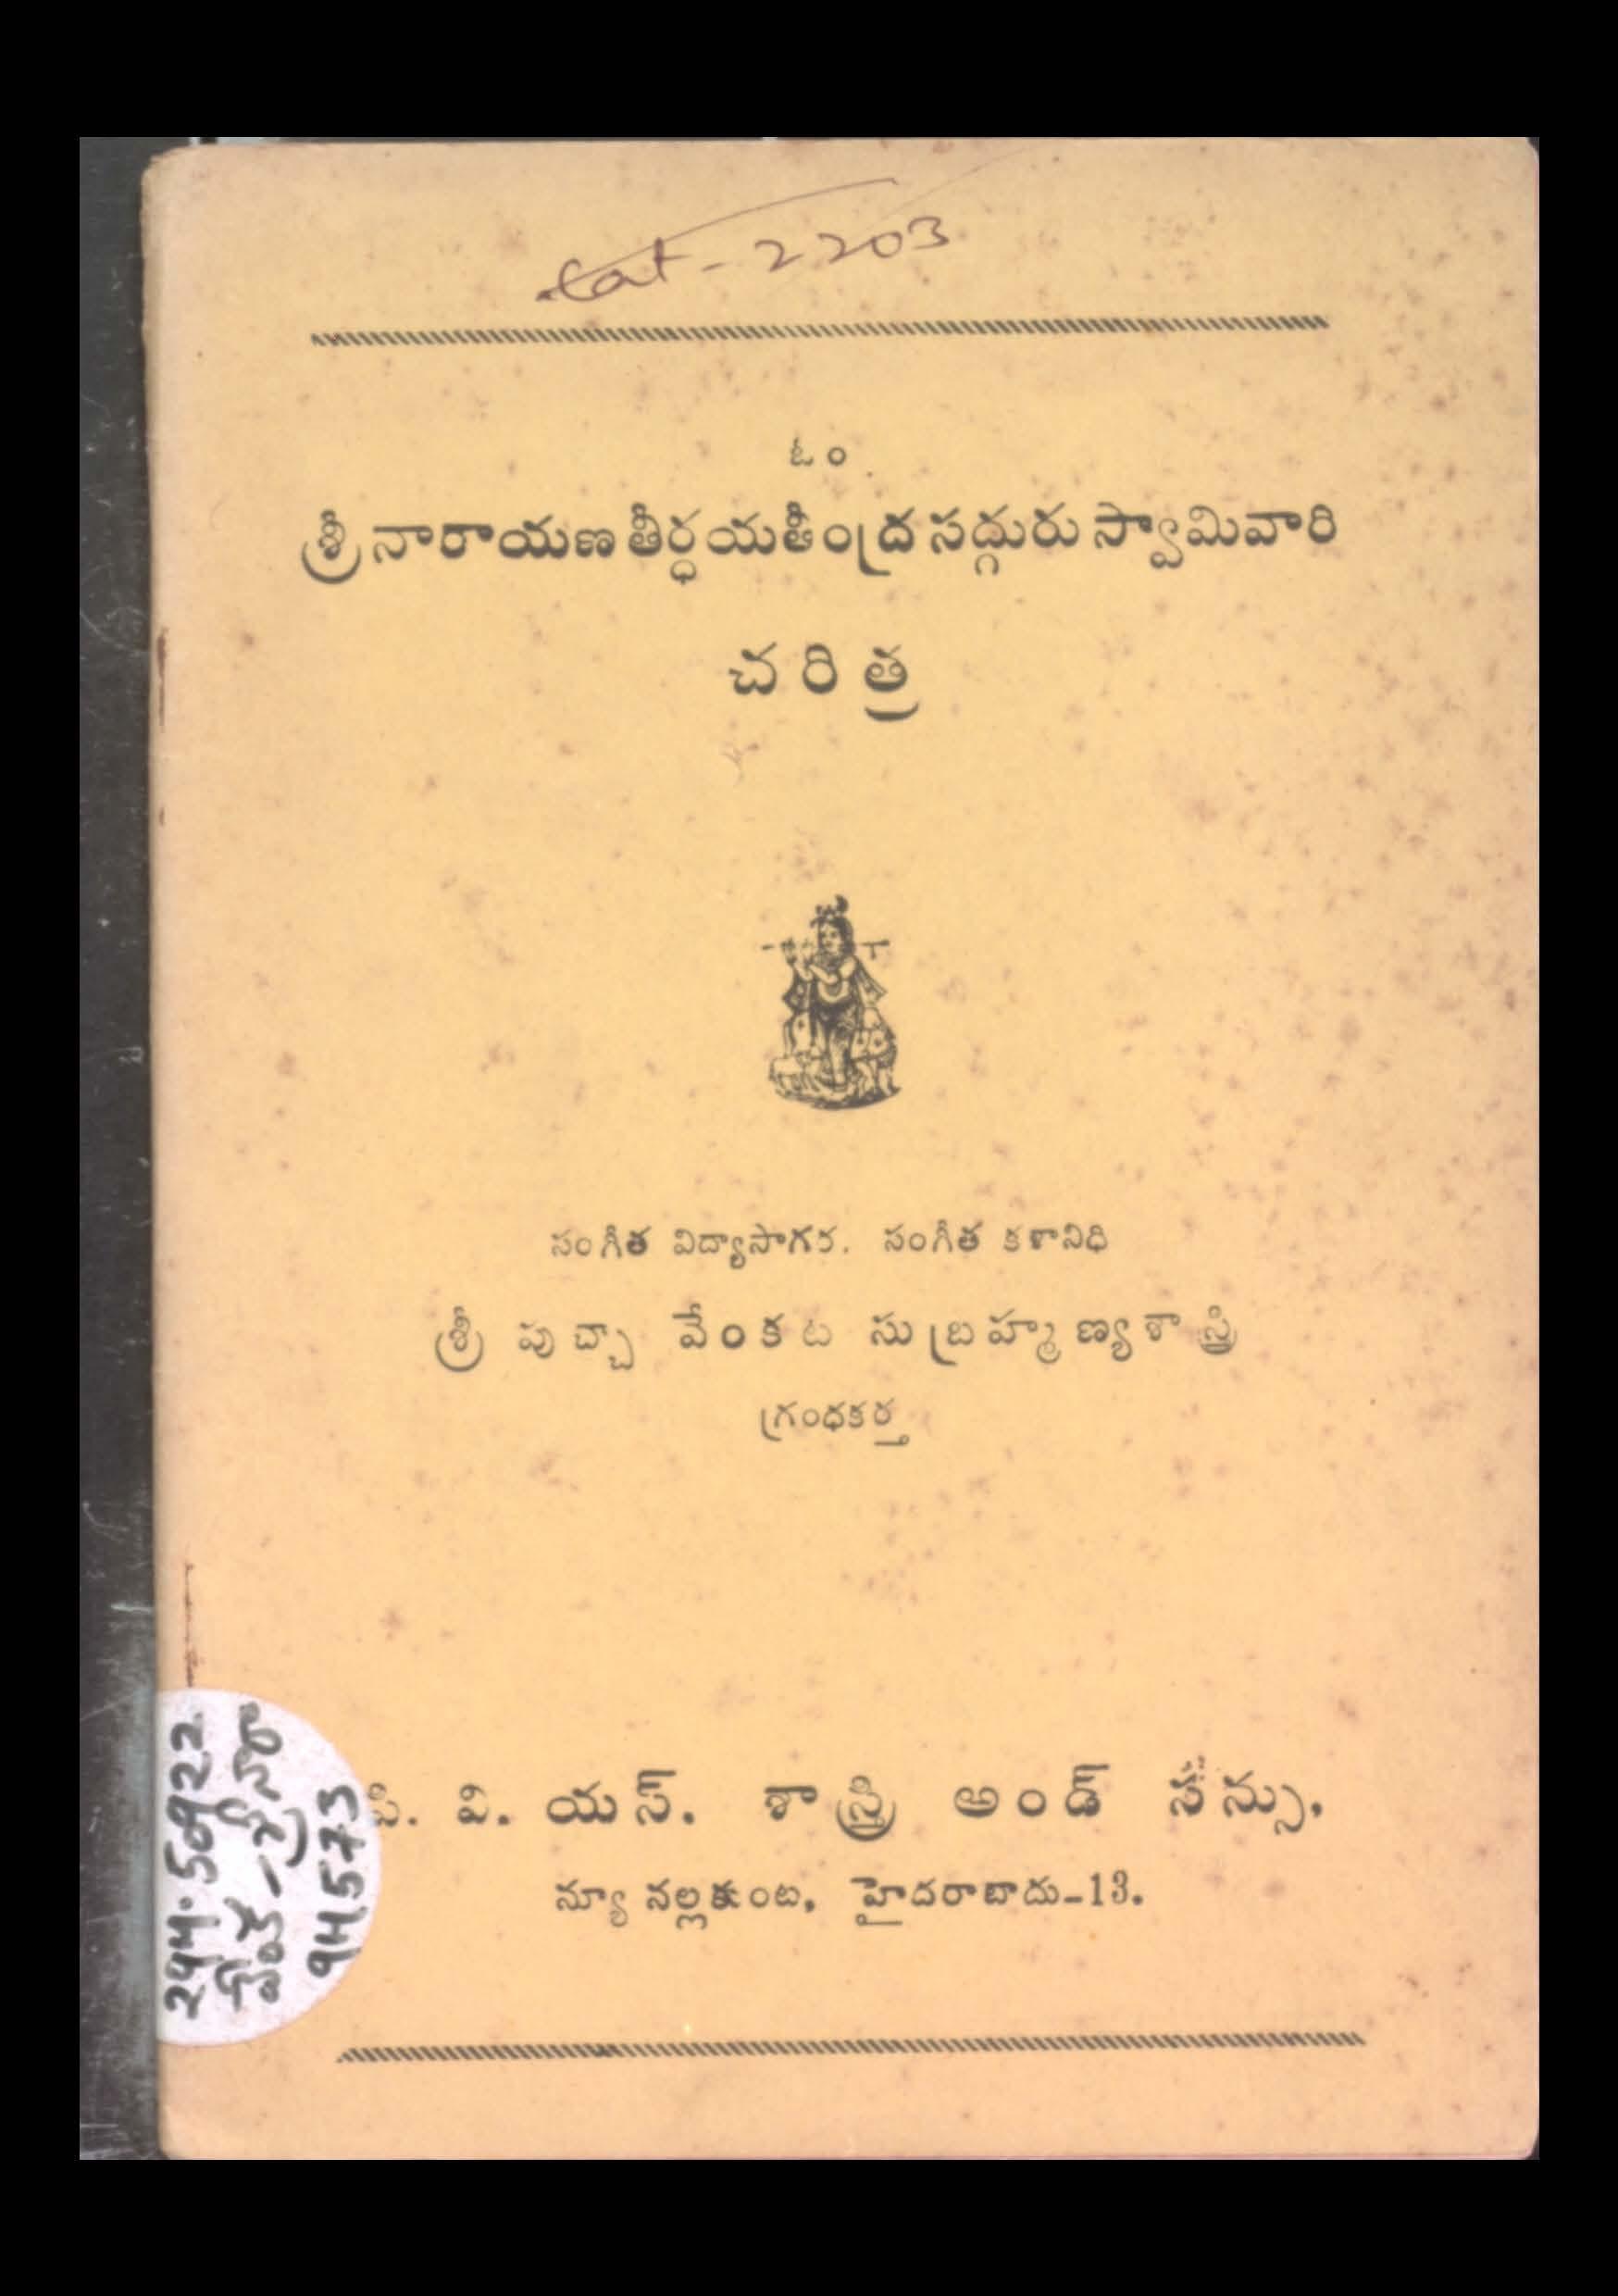 Sri Naarayana Theertha Yaathendra Sadguru